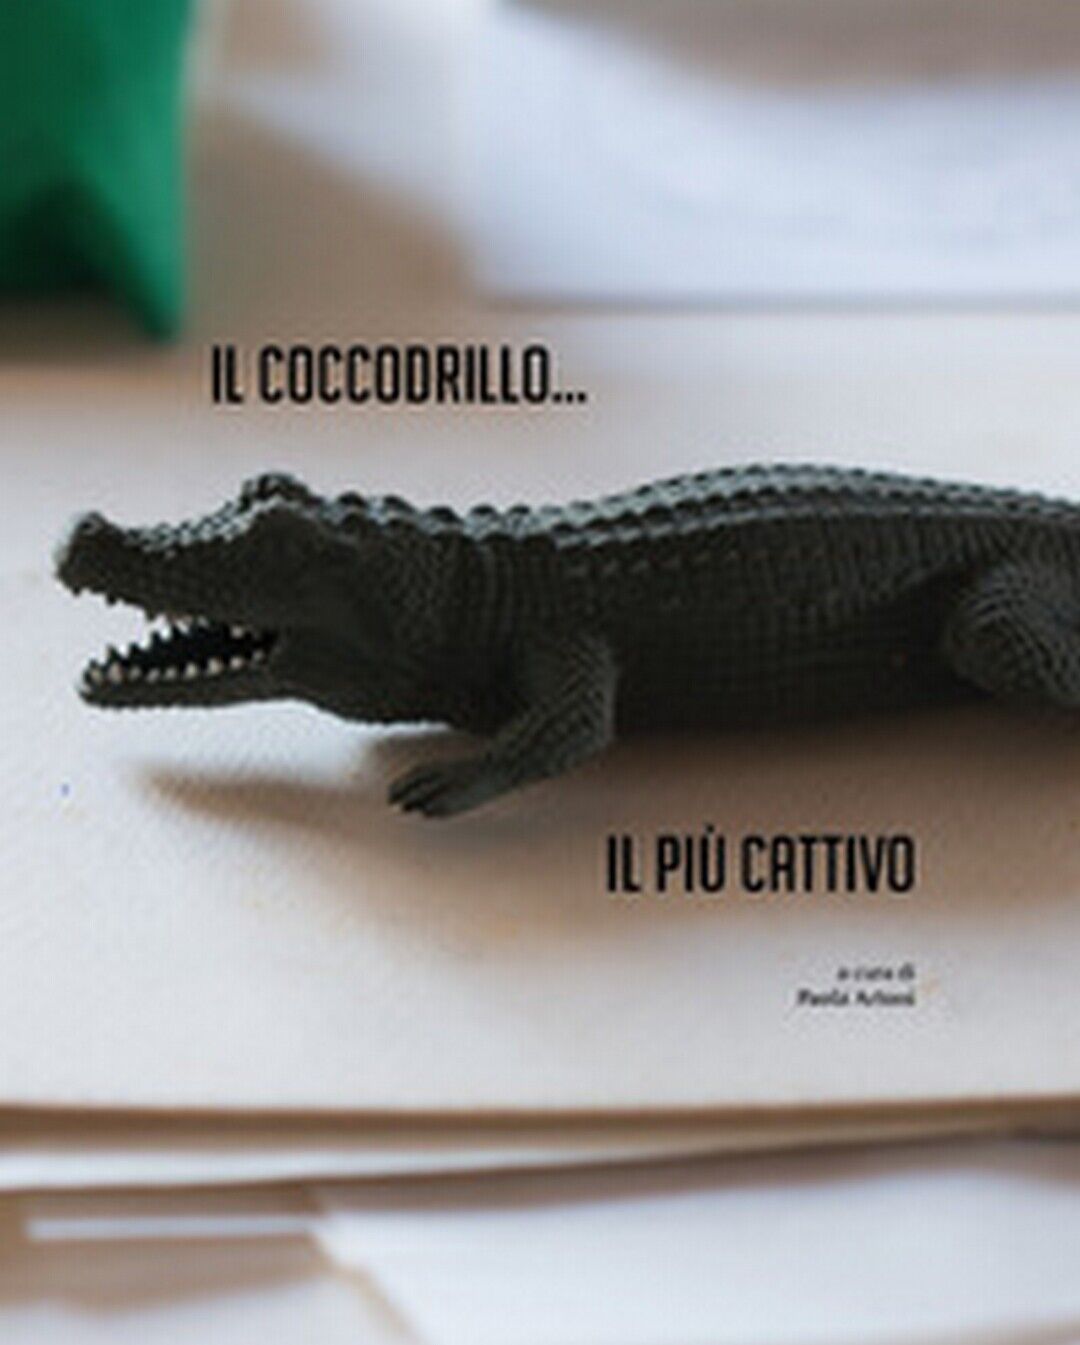 Il coccodrillo... Il pi? cattivo  di P. Artoni,  2017,  Universitas Studiorum libro usato